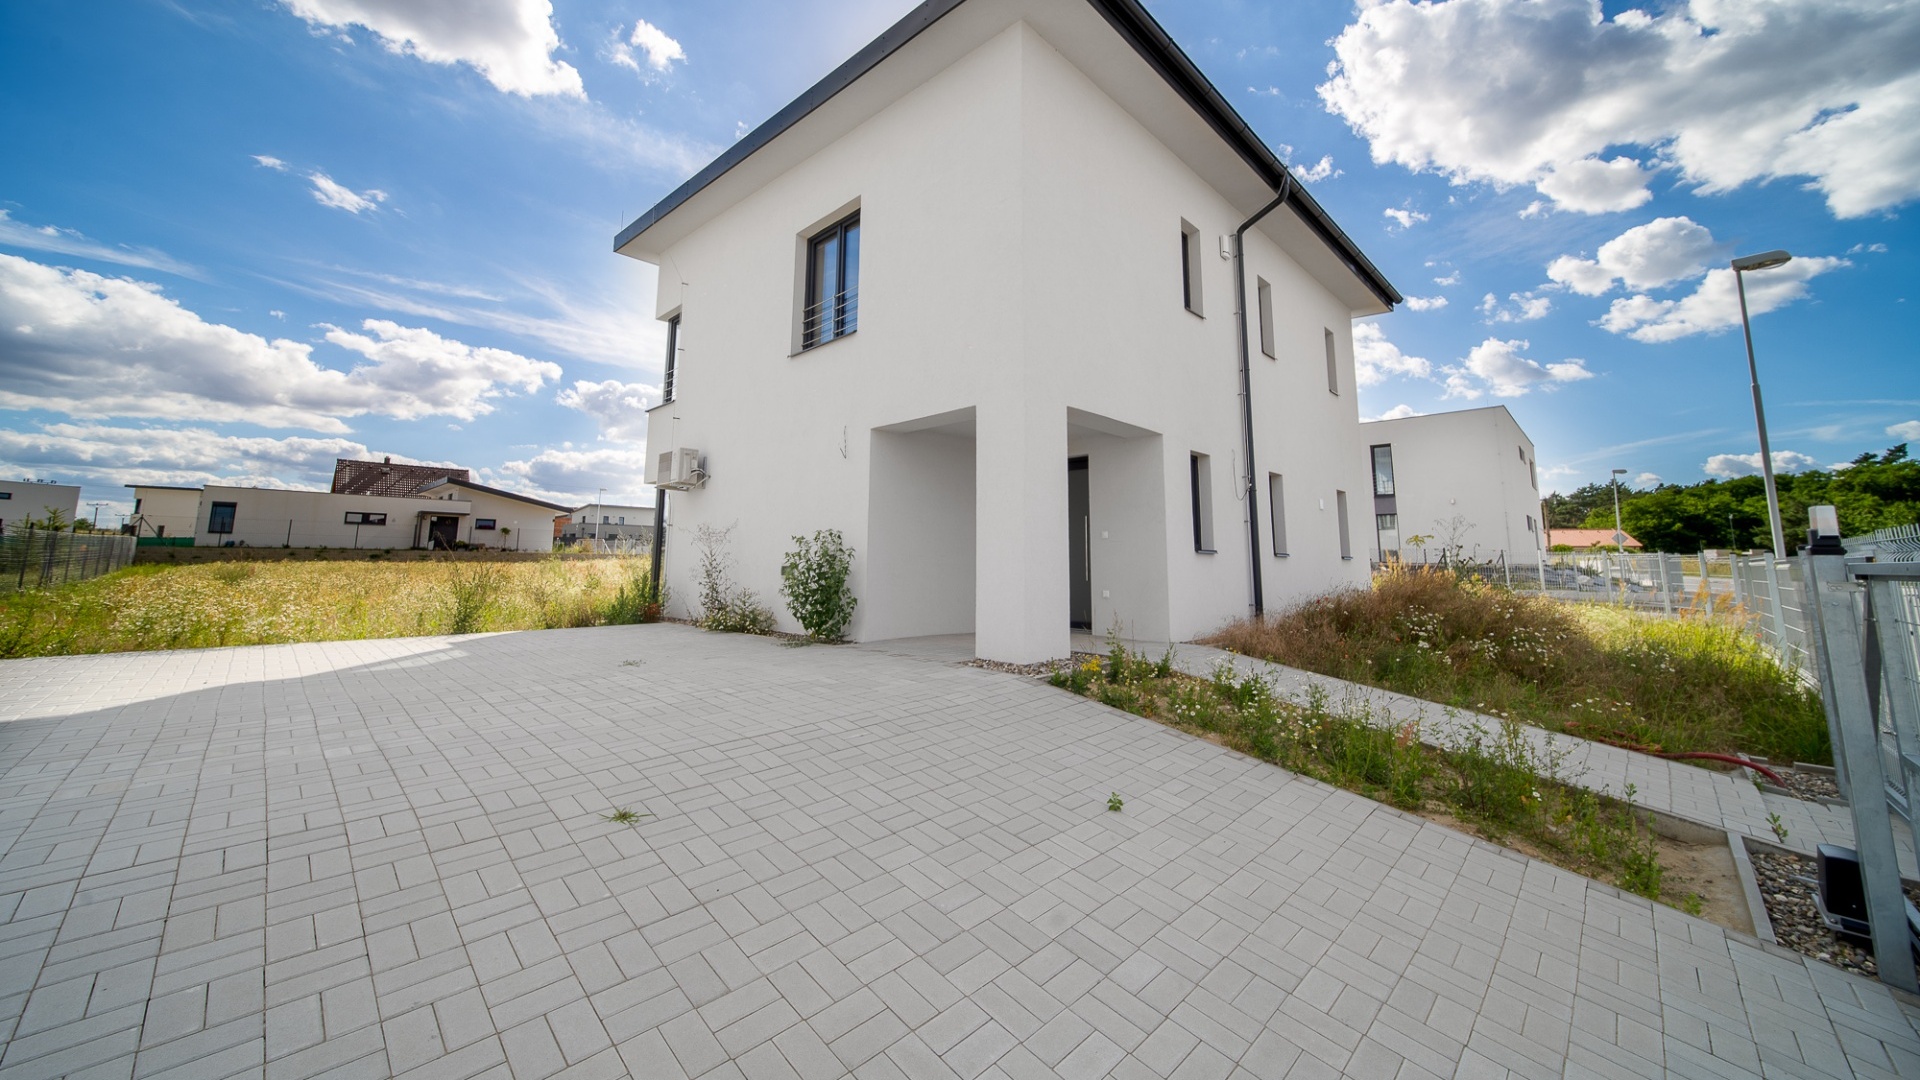 Pronájem novostavby rod. domu 130 m² se zahradou 1150 m² , M. Boleslav - Chrást